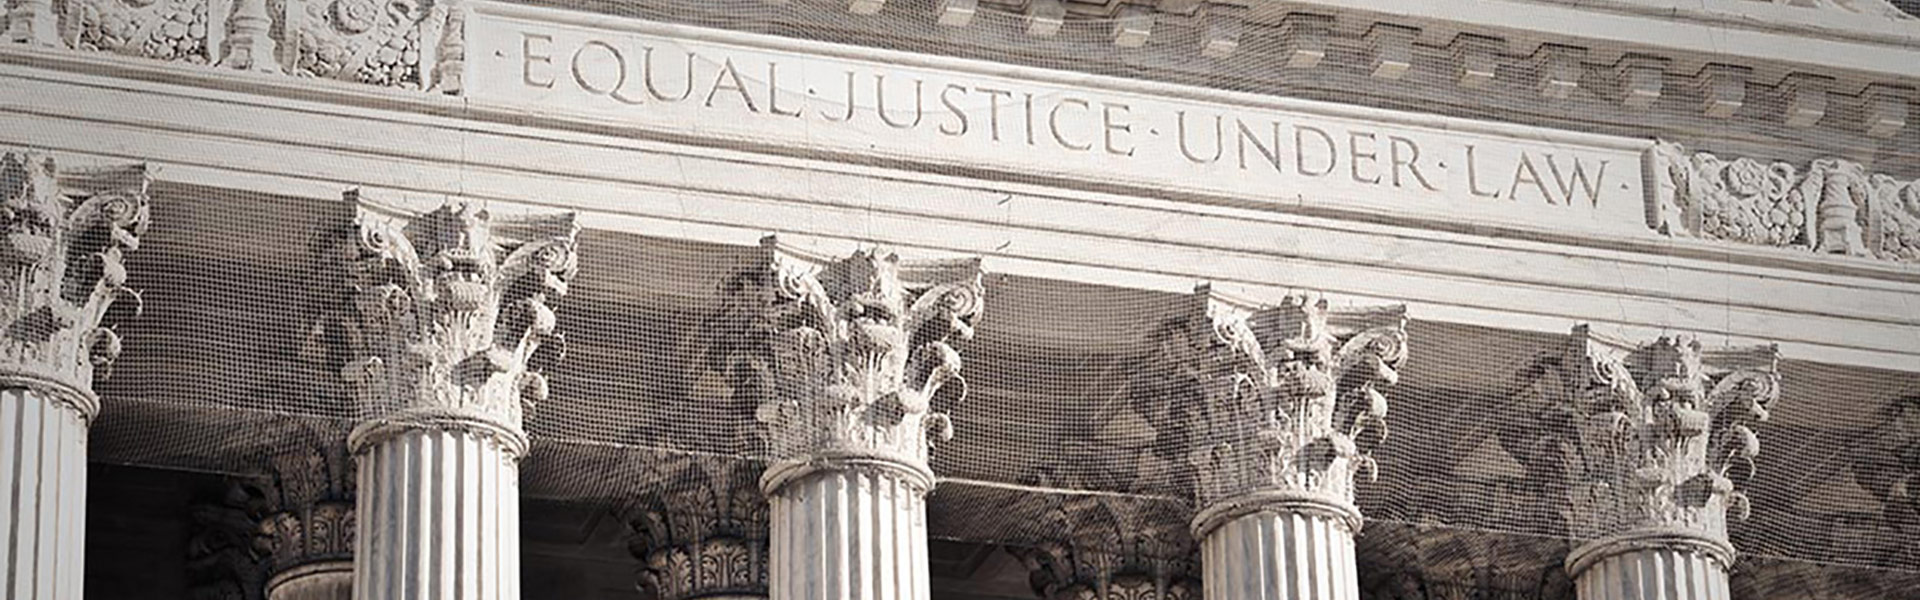 Equal Justice Under law building